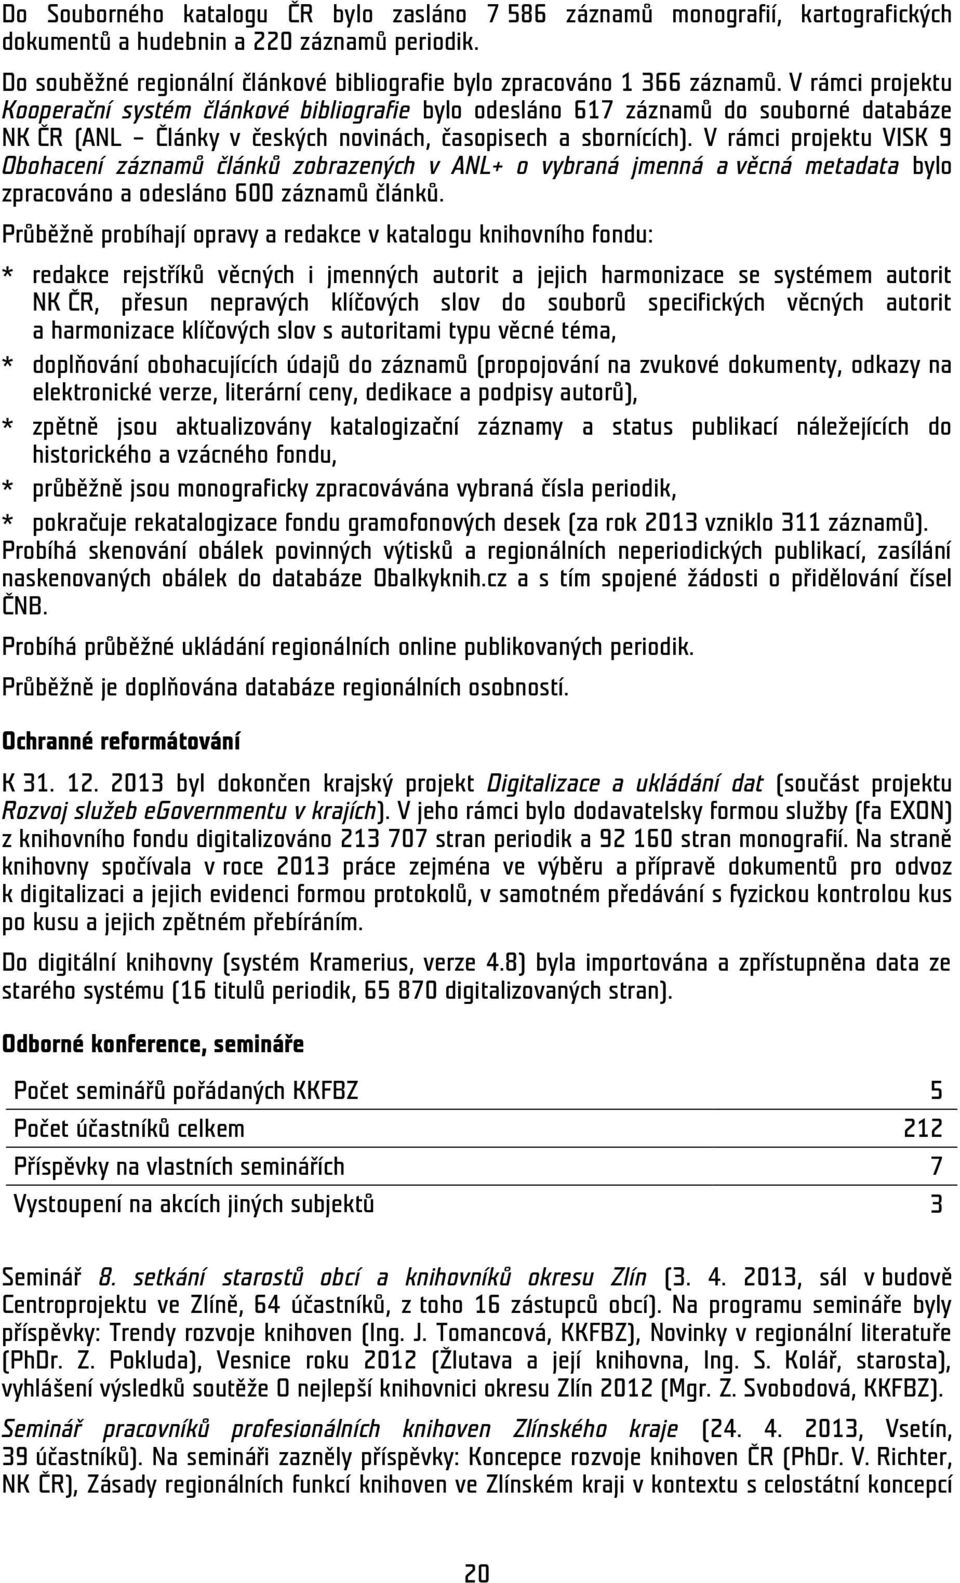 V rámci projektu Kooperační systém článkové bibliografie bylo odesláno 617 záznamů do souborné databáze NK ČR (ANL Články v českých novinách, časopisech a sbornících).